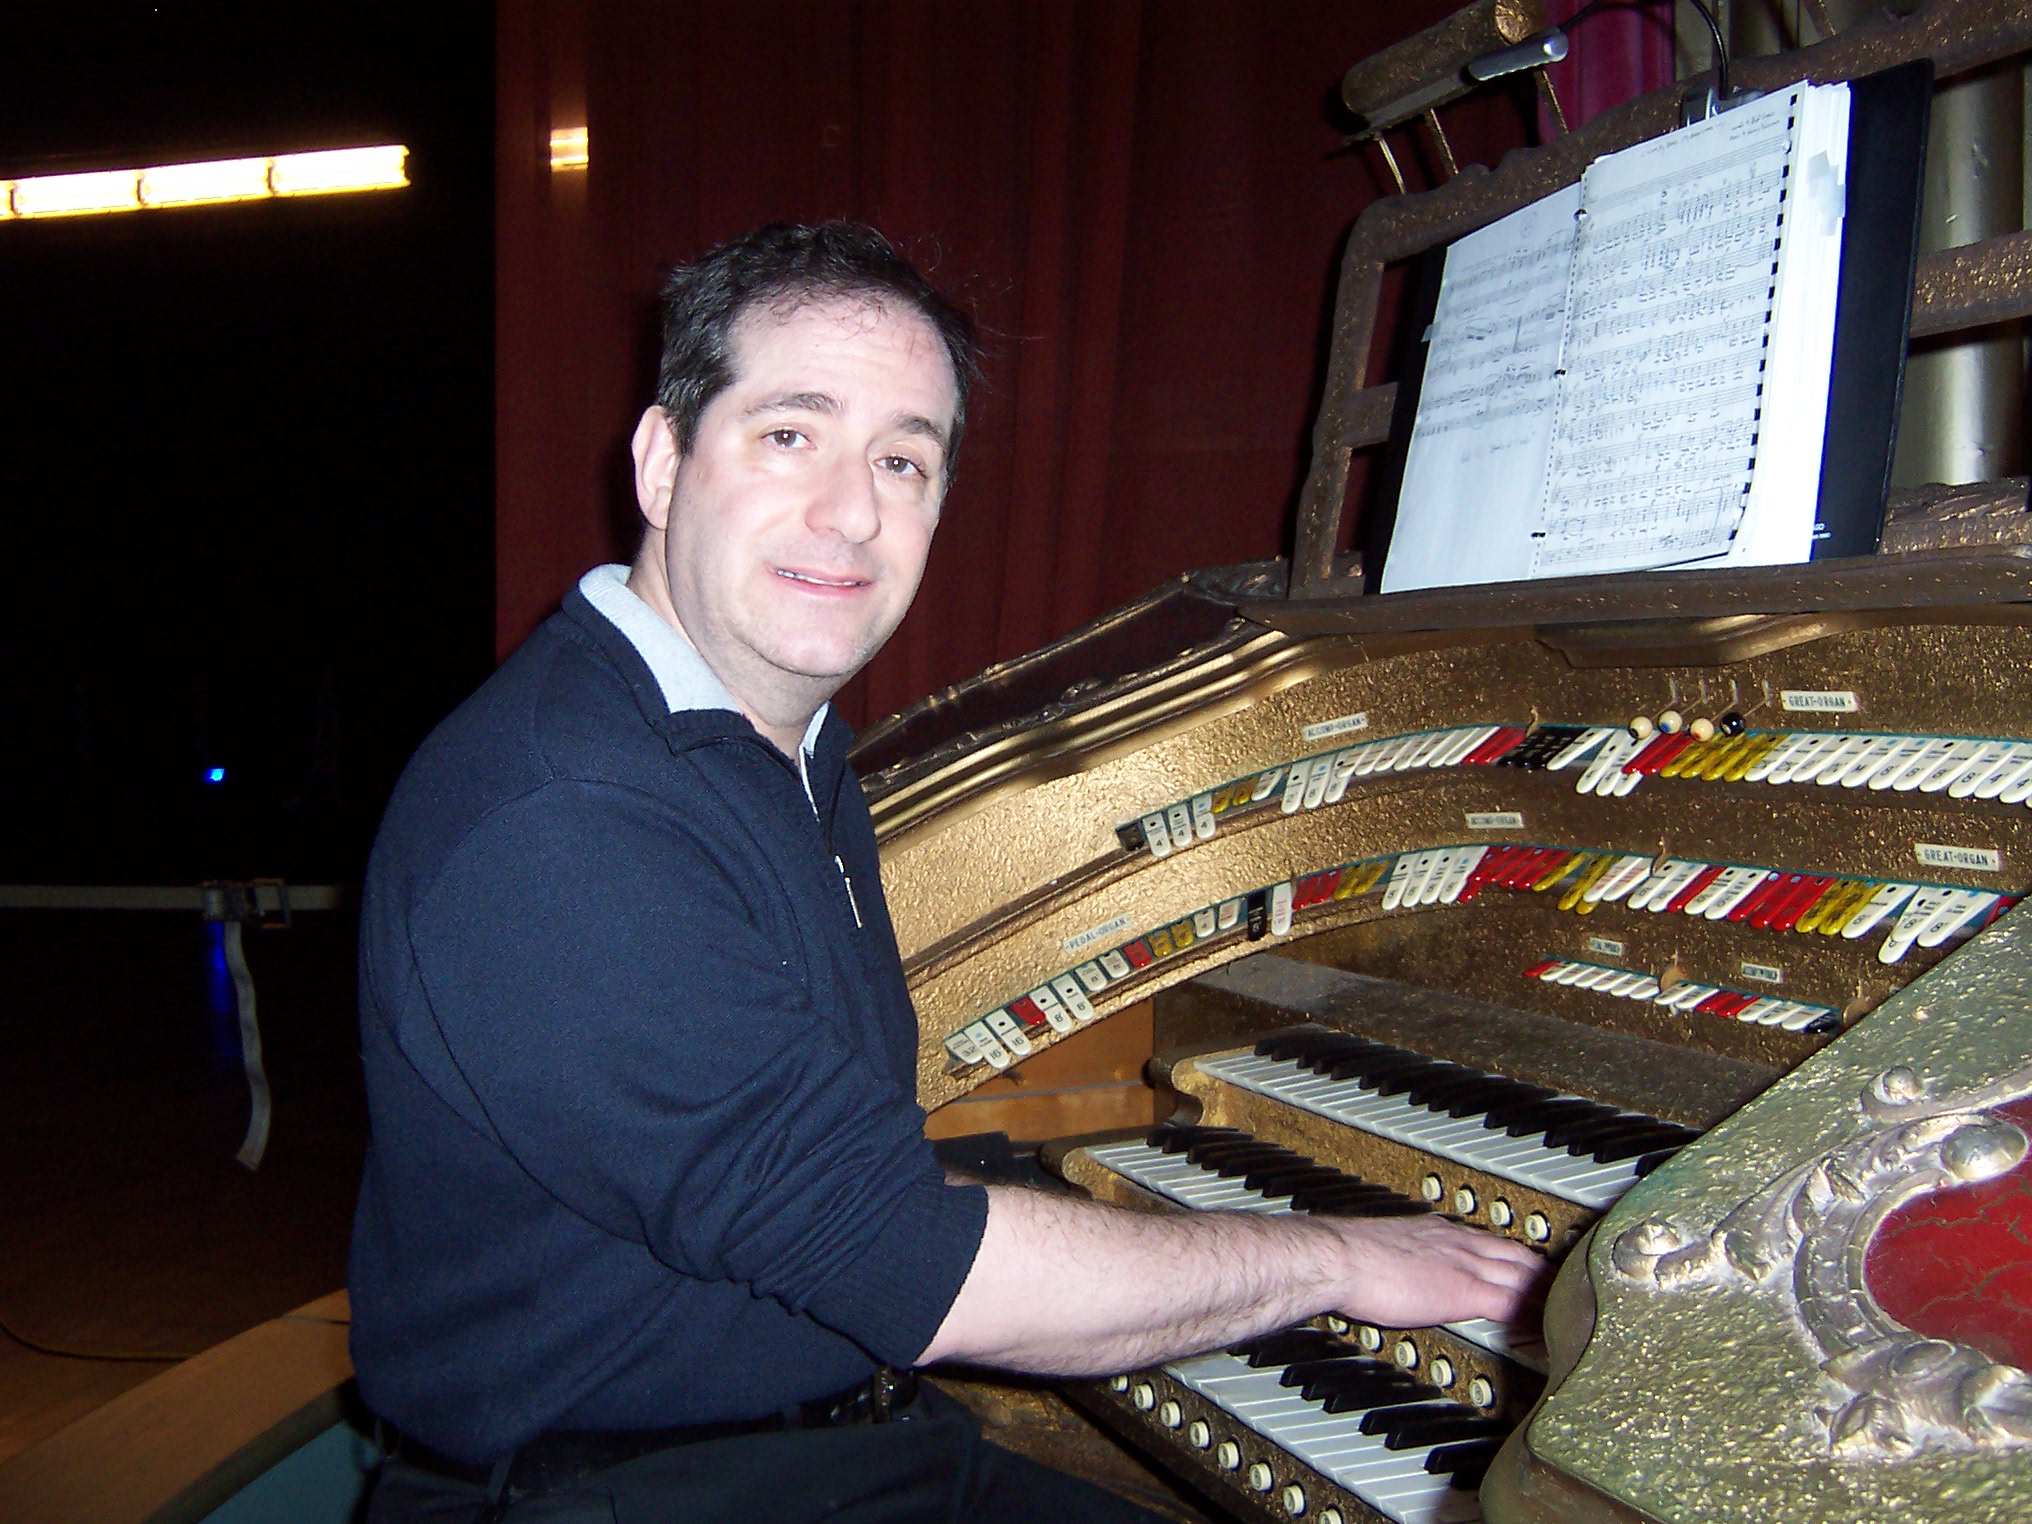 Dave at the organ